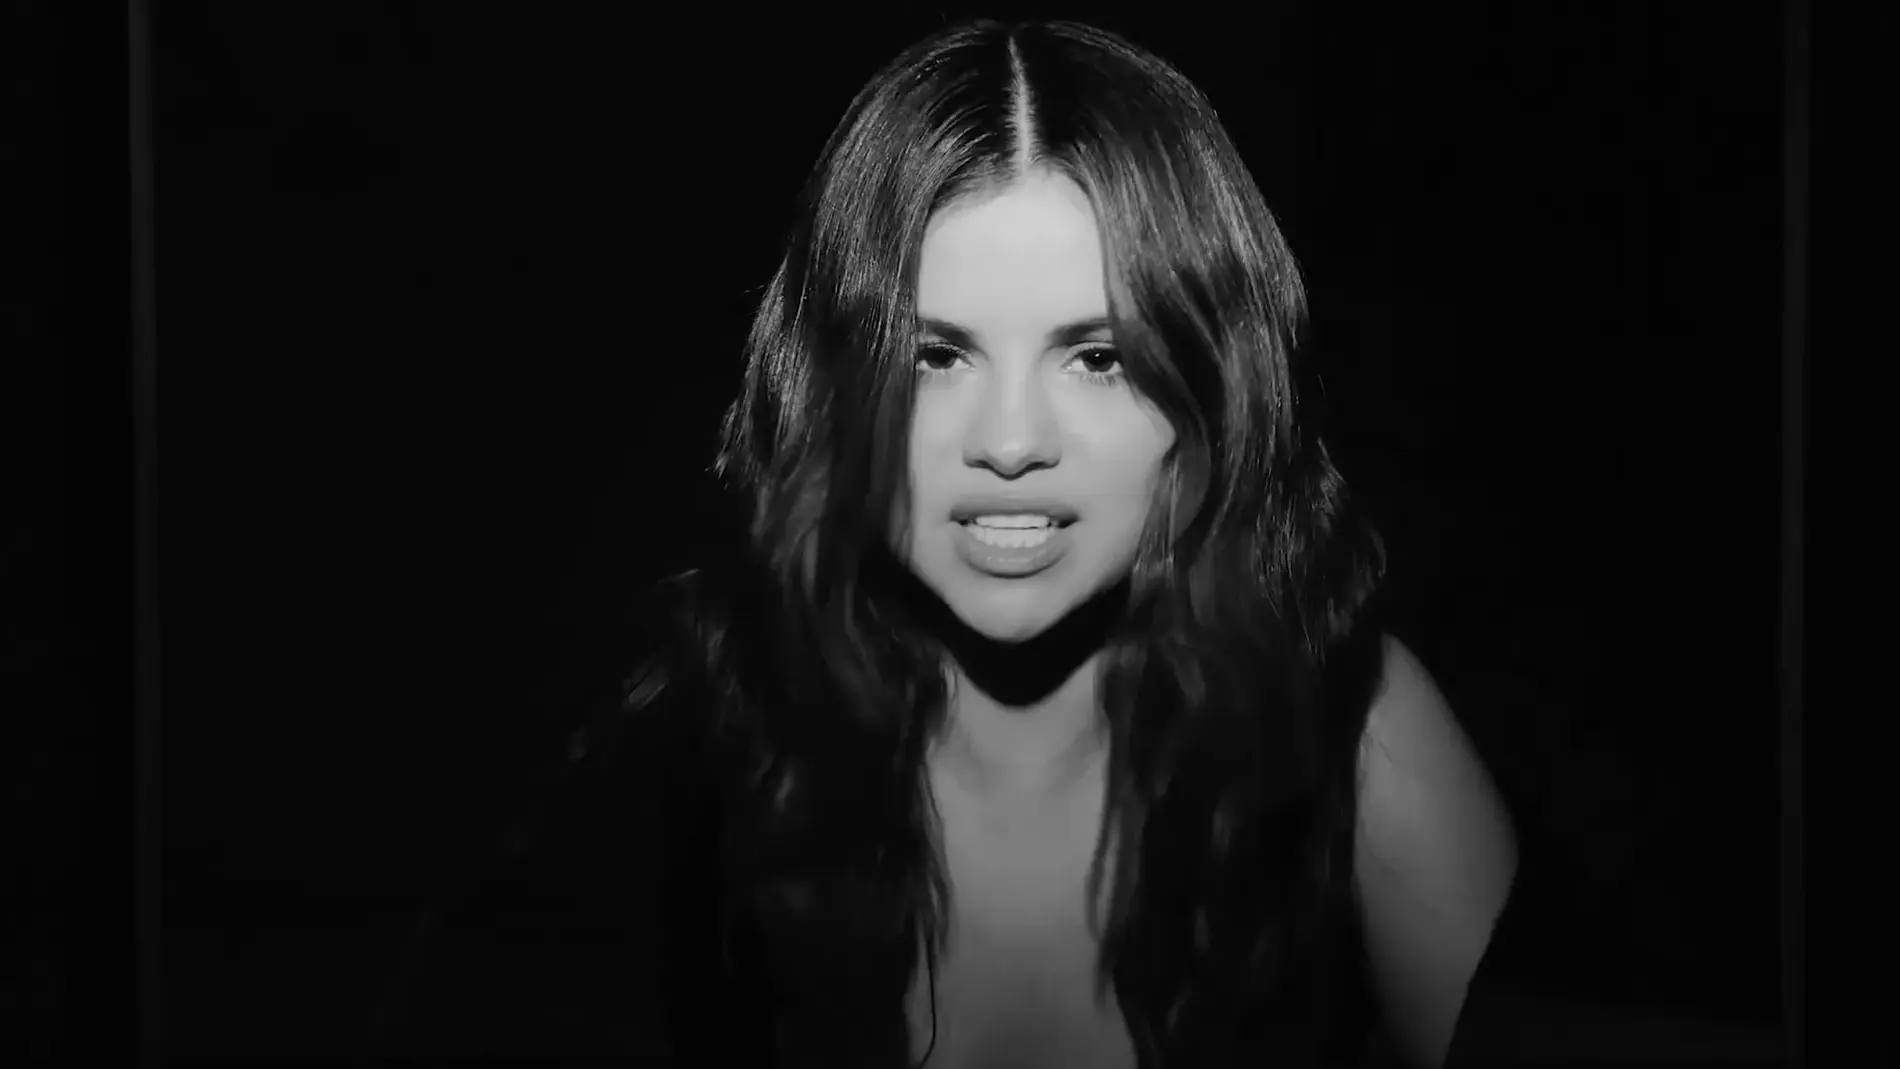 El vídeo de Selena Gómez ha sido dirigido por Sophie Muller, que ha utilizado un iPhone 11 Pro para plasmar su estilo personal